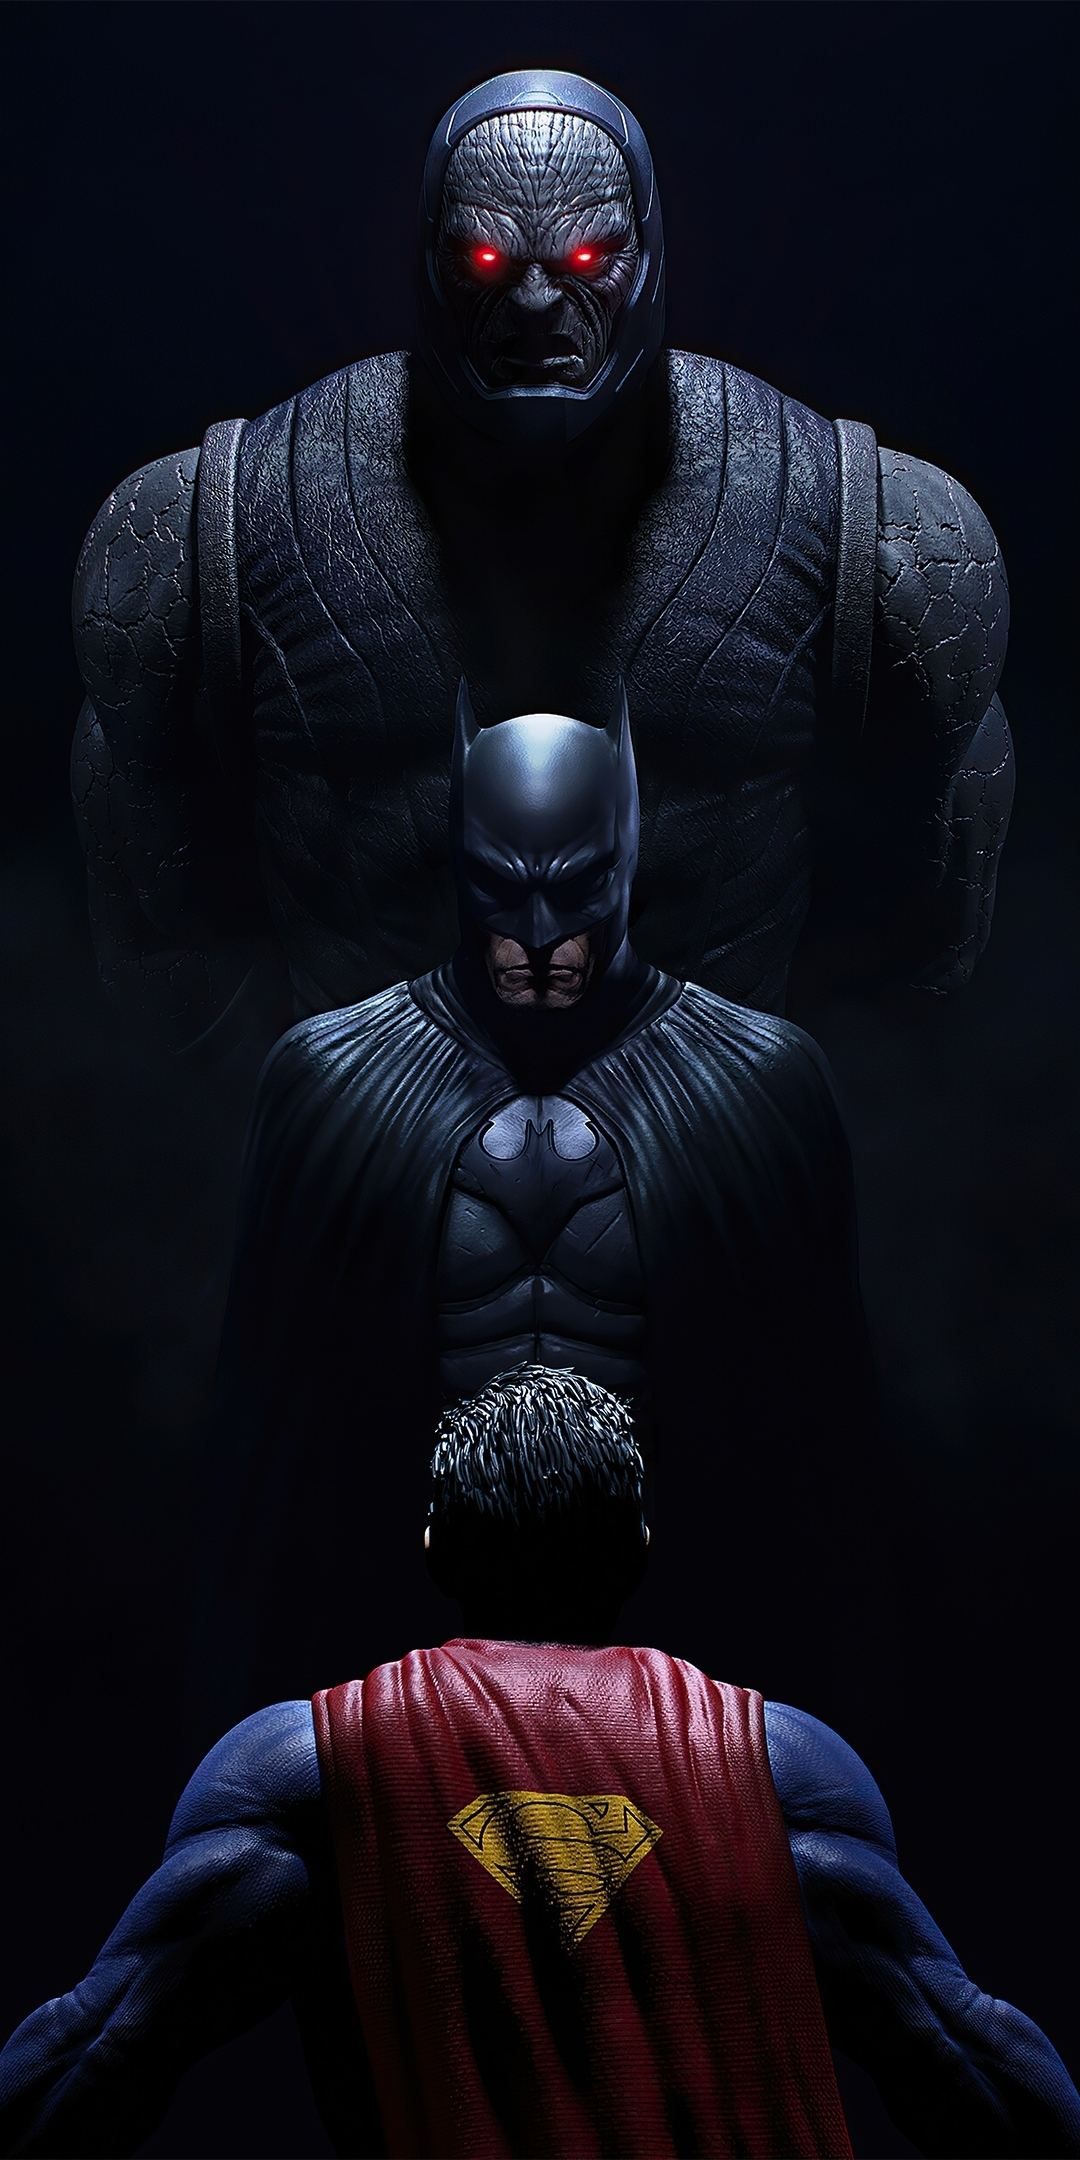 Darkseid & batman vs superman, dark, 1080x2160 wallpaper